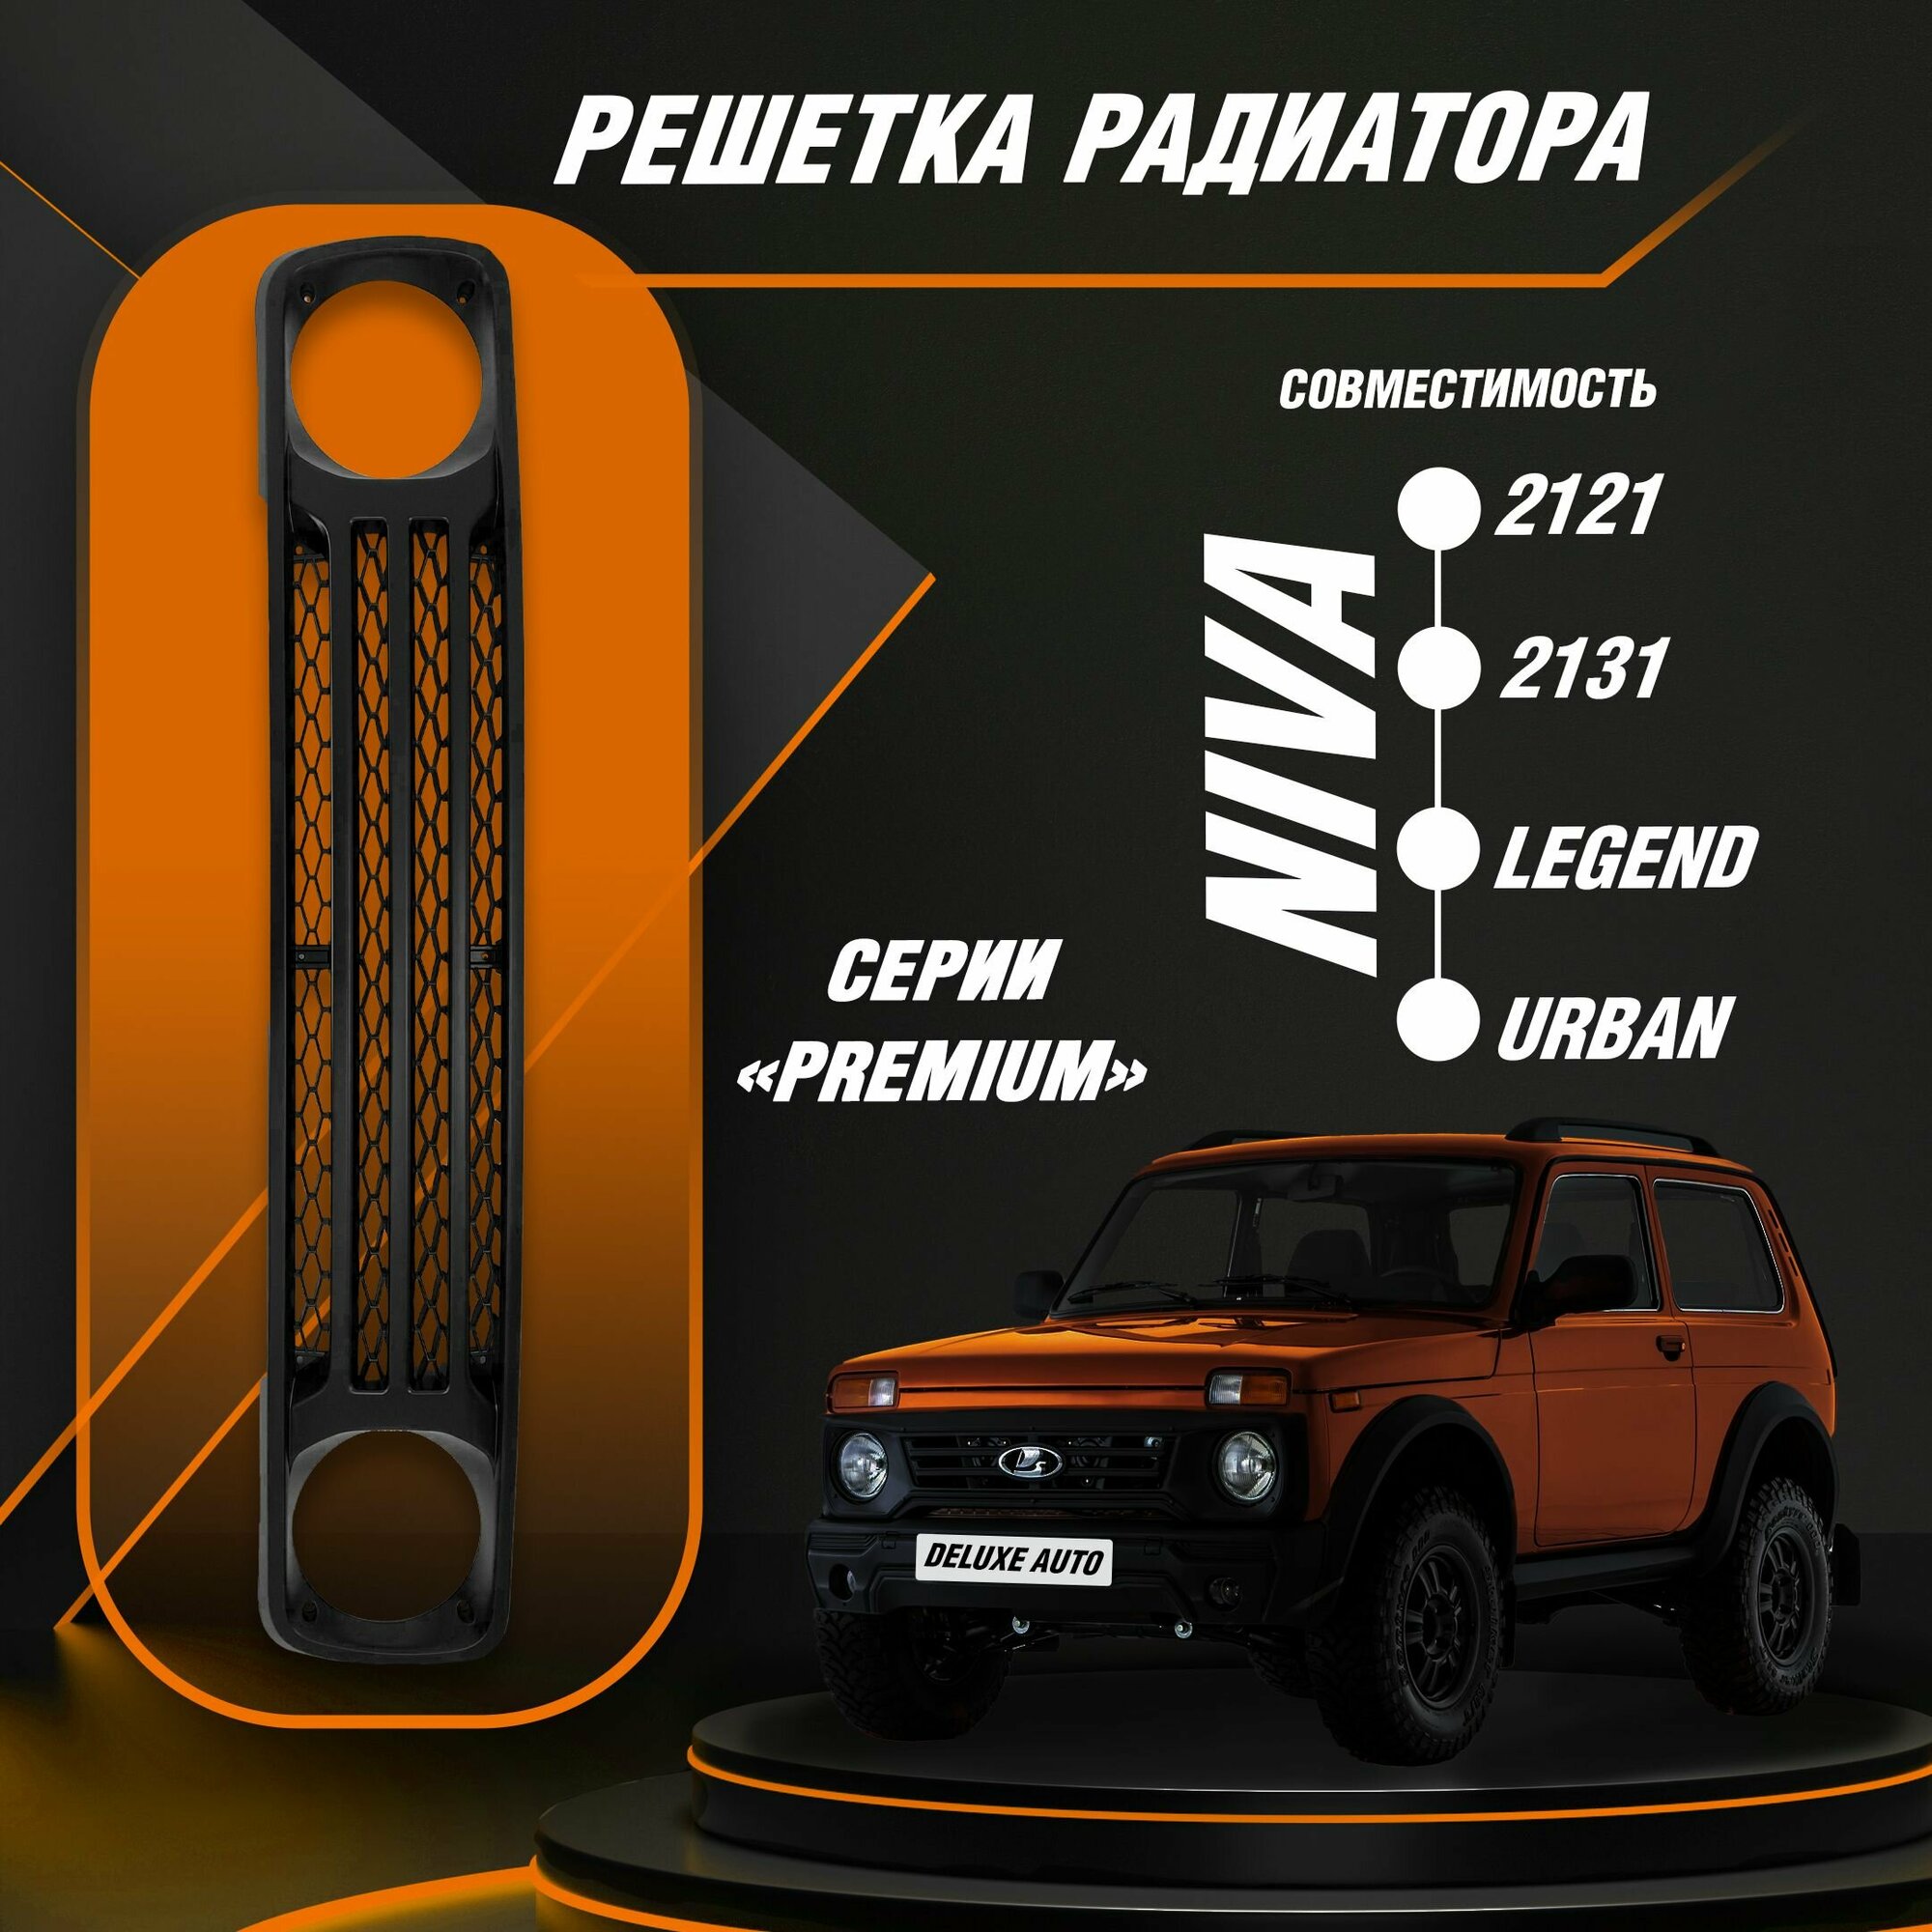 Решетка радиатора серии Premium для Автомобиля Нива -2121 2131  Урбан  Легенд.